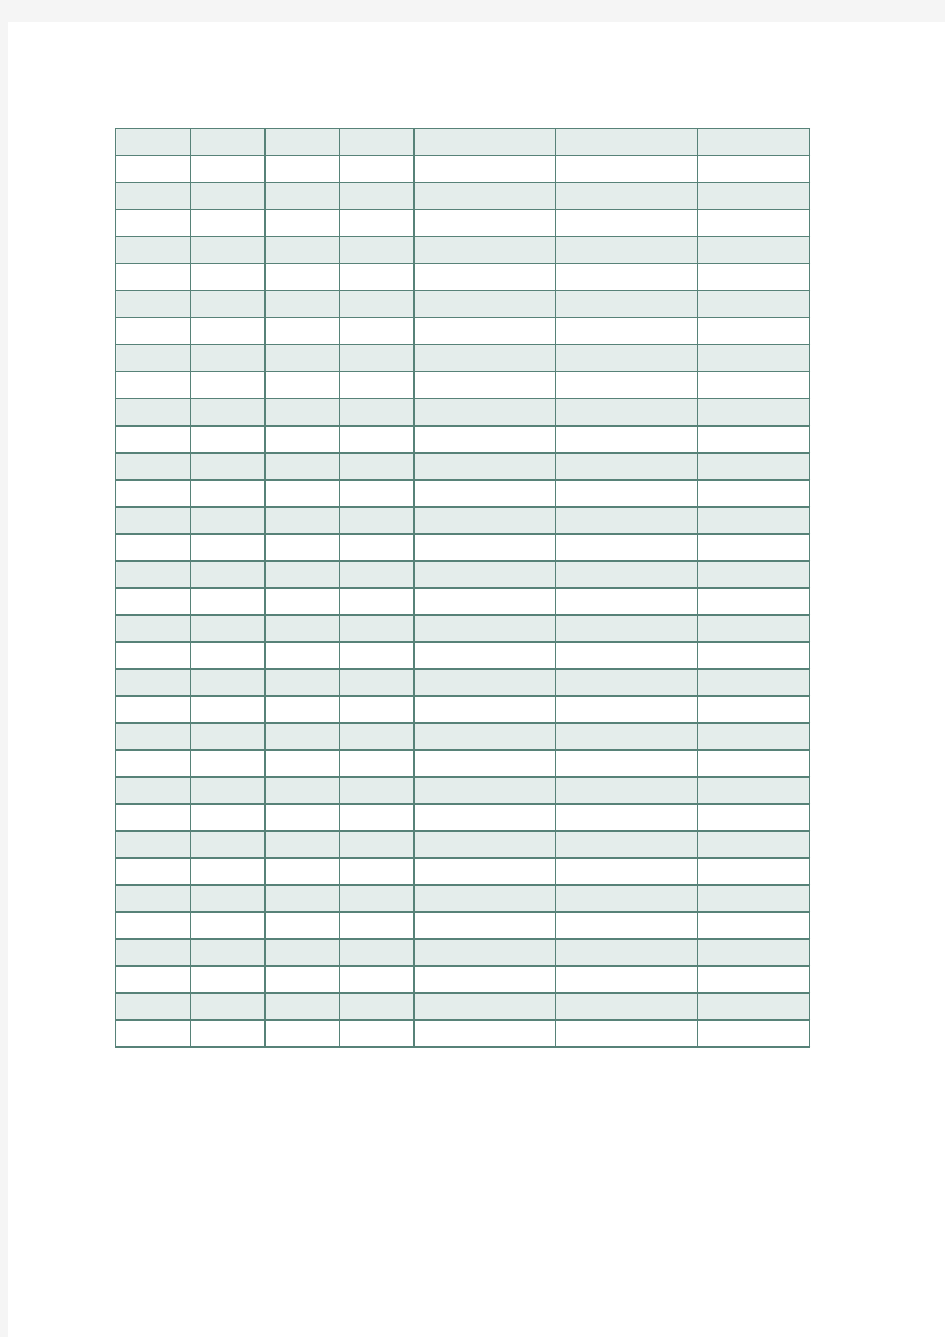 物业管理房屋维修记录表Excel模板